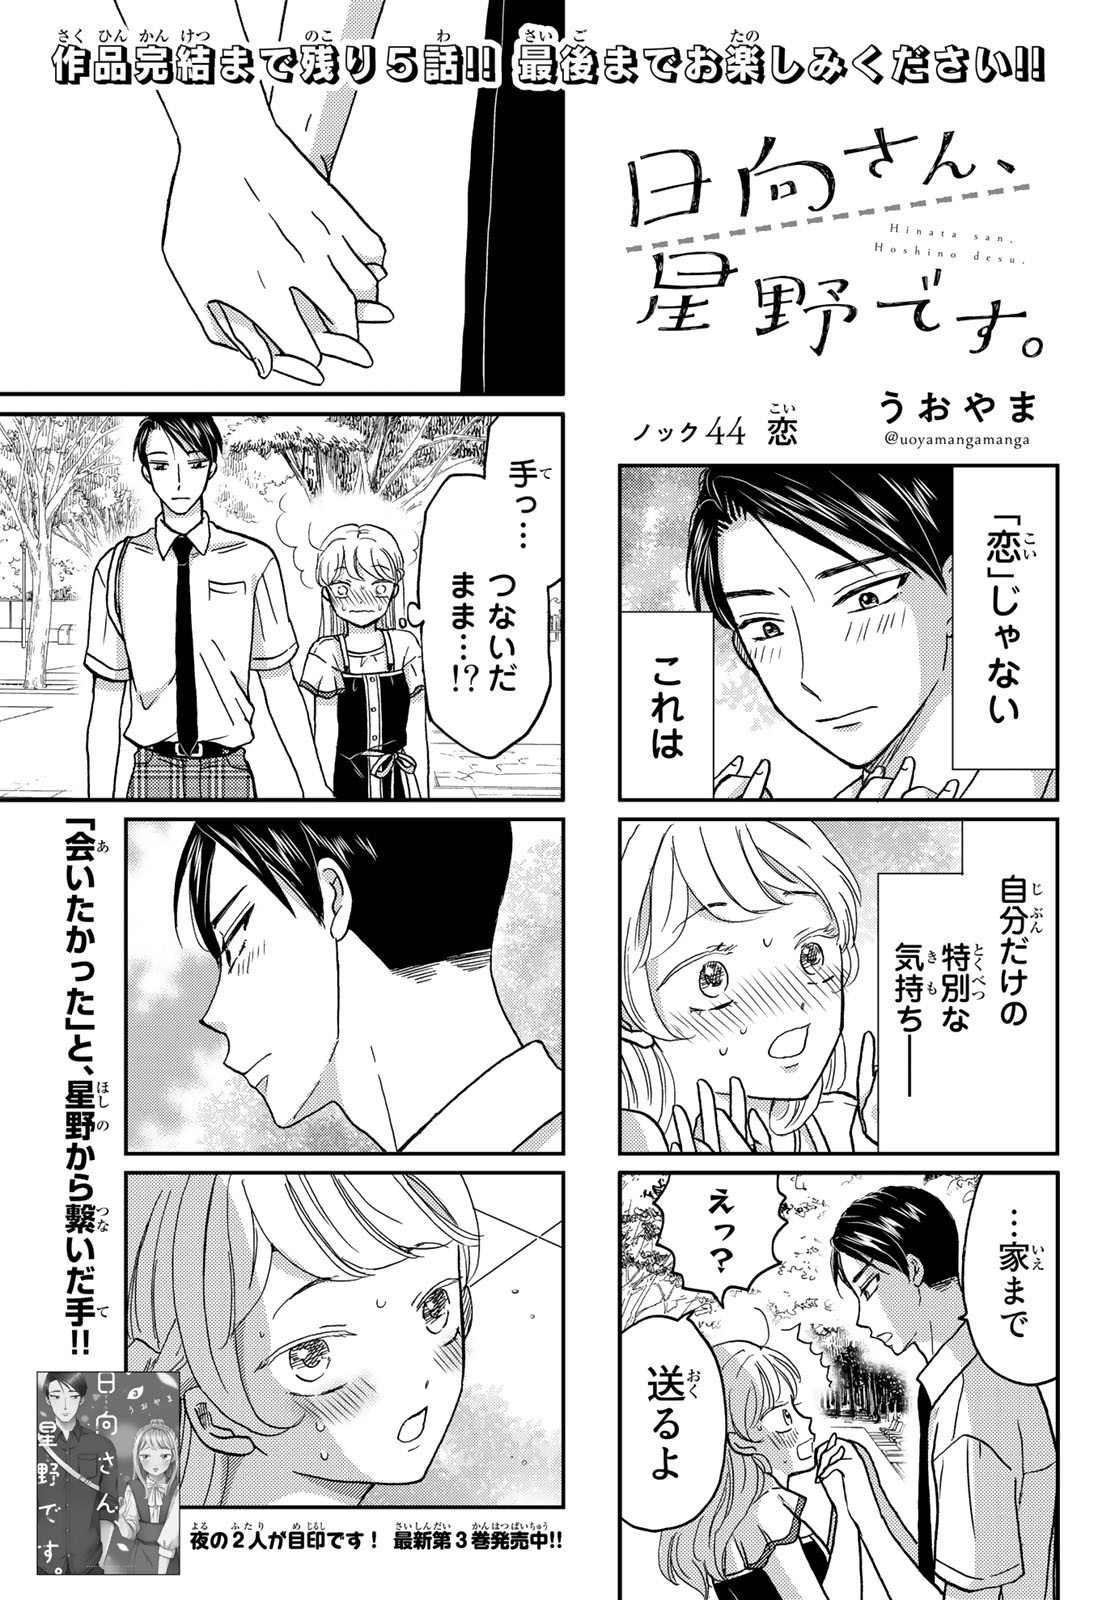 Hinata-san, Hoshino desu. - Chapter 044 - Page 1